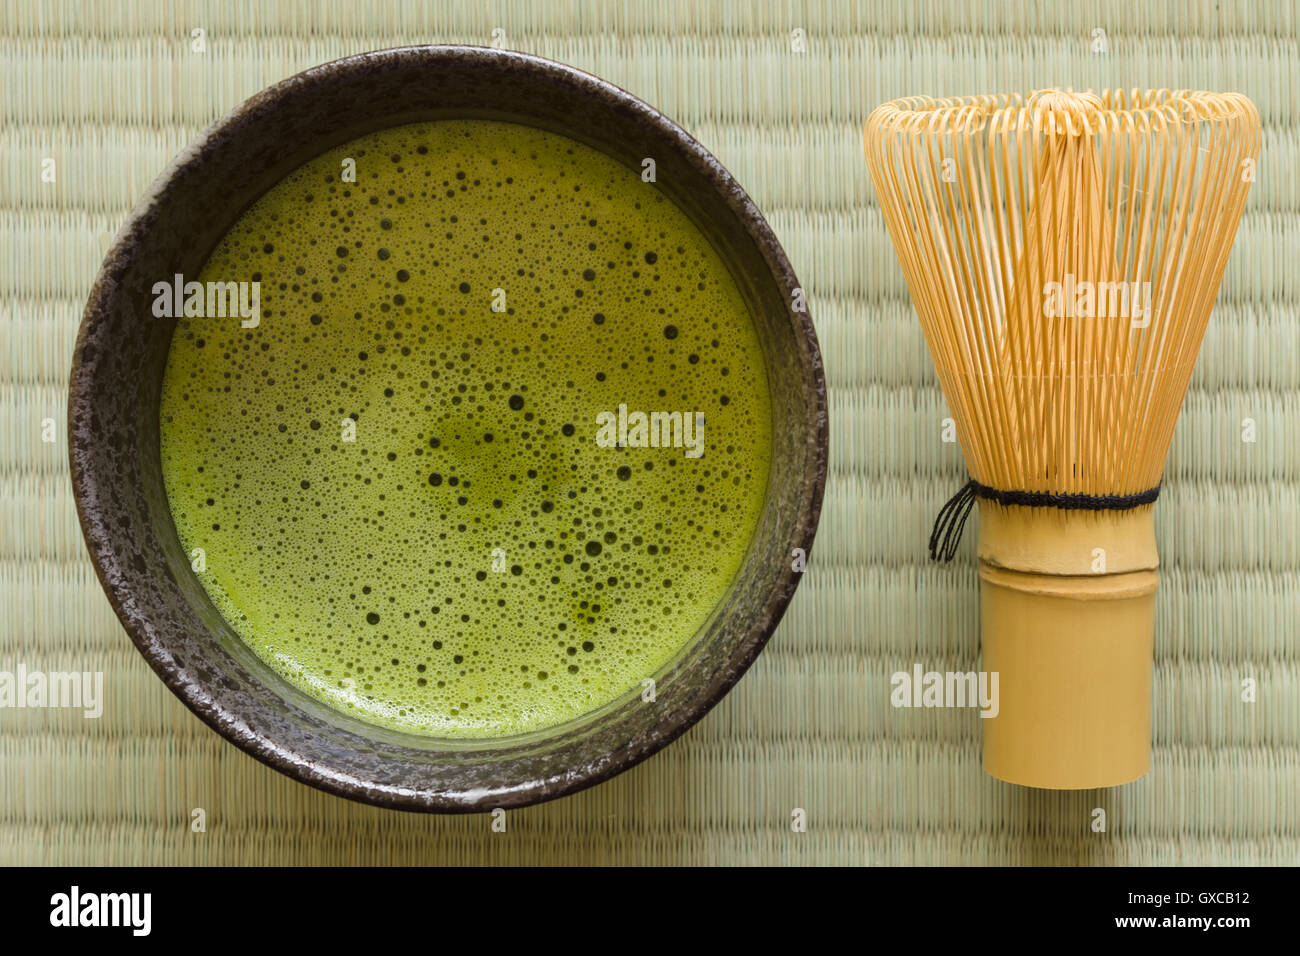 Thé vert japonais Matcha dans un bol en céramique chawan ou traditionnel avec un fouet en bambou ou chasen Banque D'Images